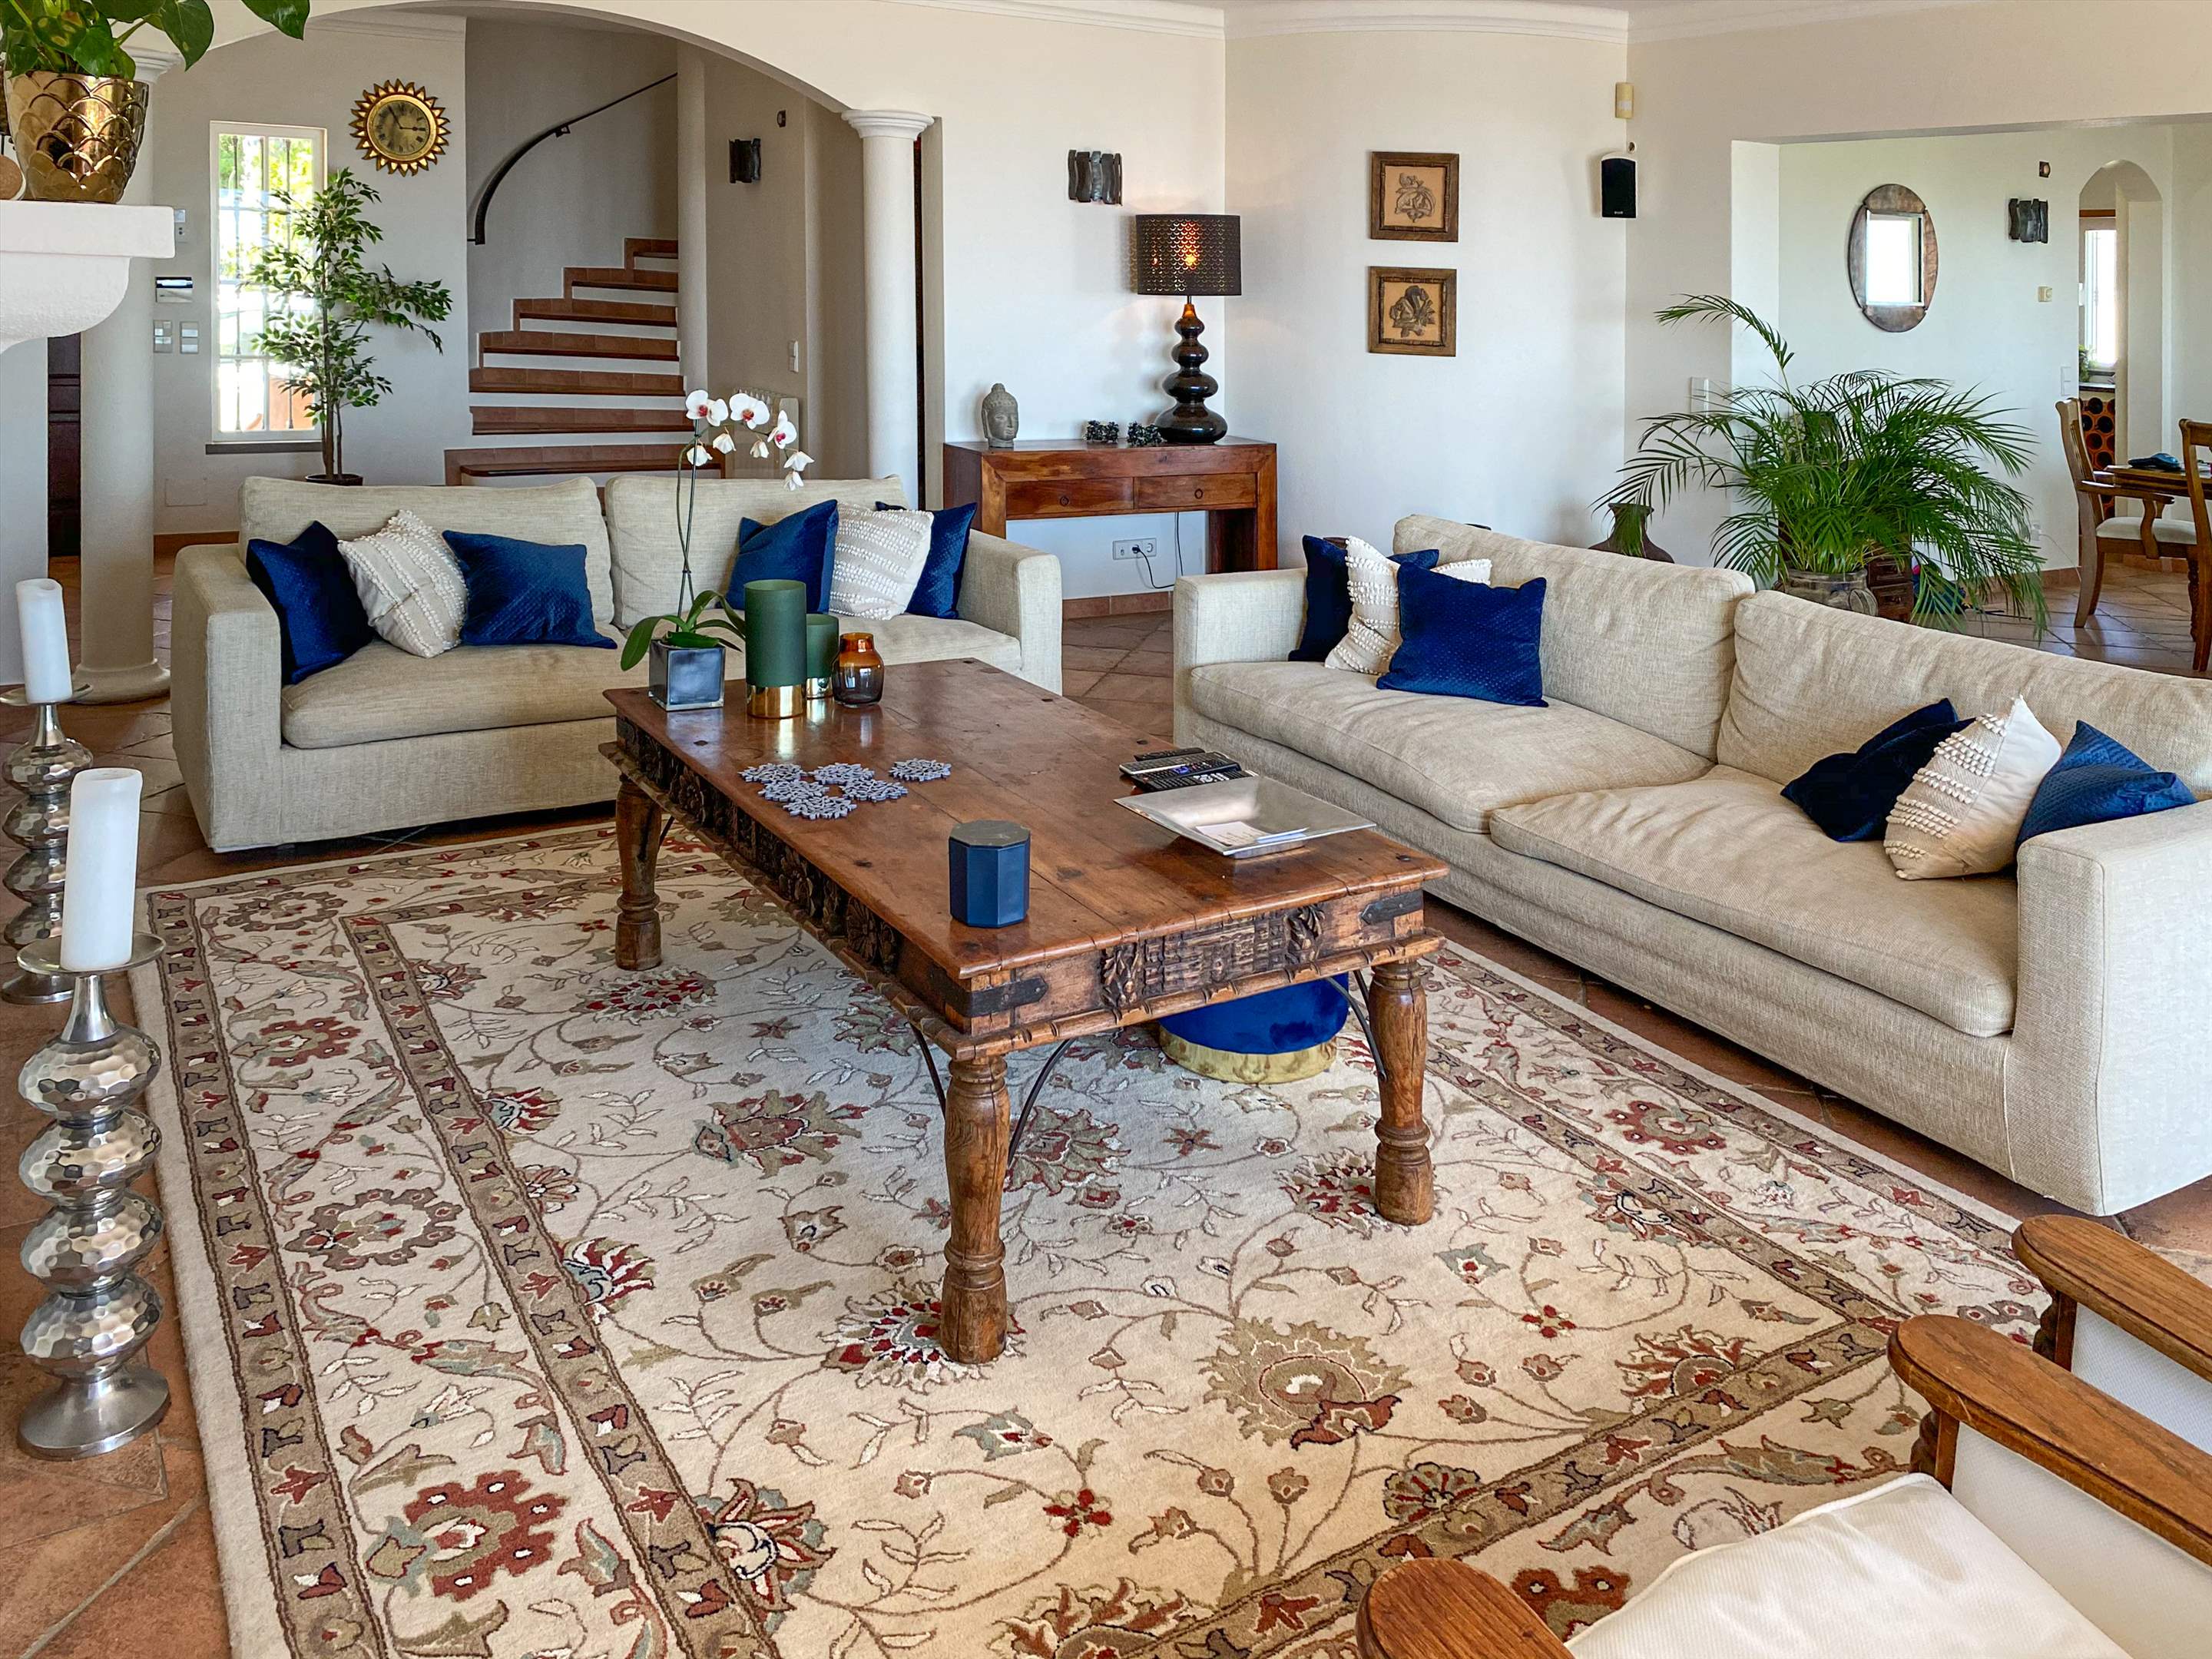 Villa Netuno, 11 persons rate, 1 extra person on sofa bed, 5 bedroom villa in Algarve Countryside, Algarve Photo #13